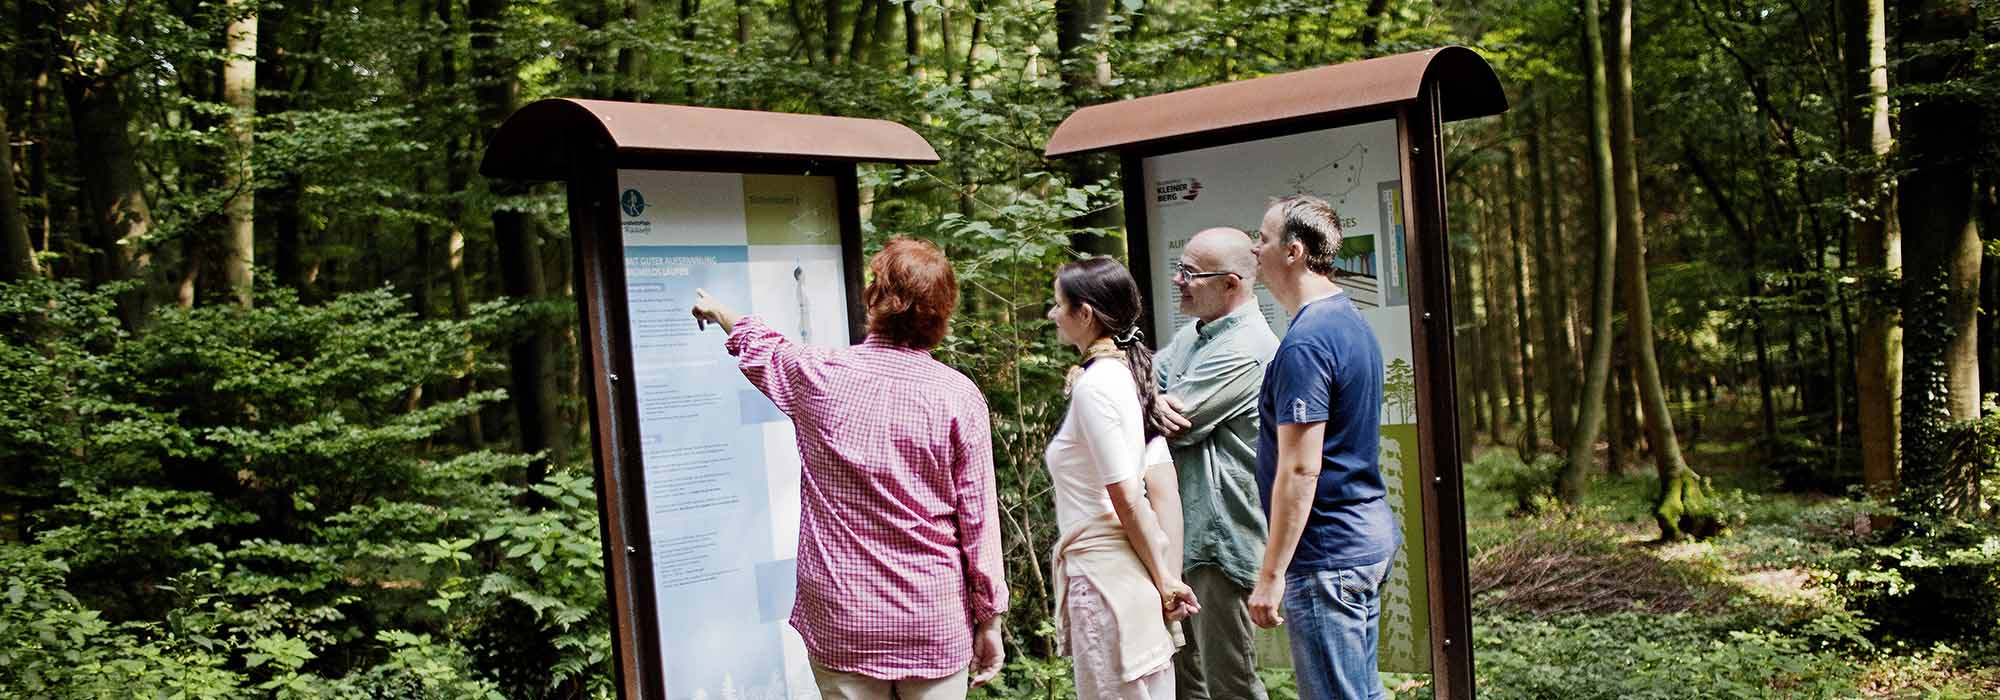 Zwei Frauen und zwei Männer stehen vor einer Informationstafel im Wald und schauen sich etwas an